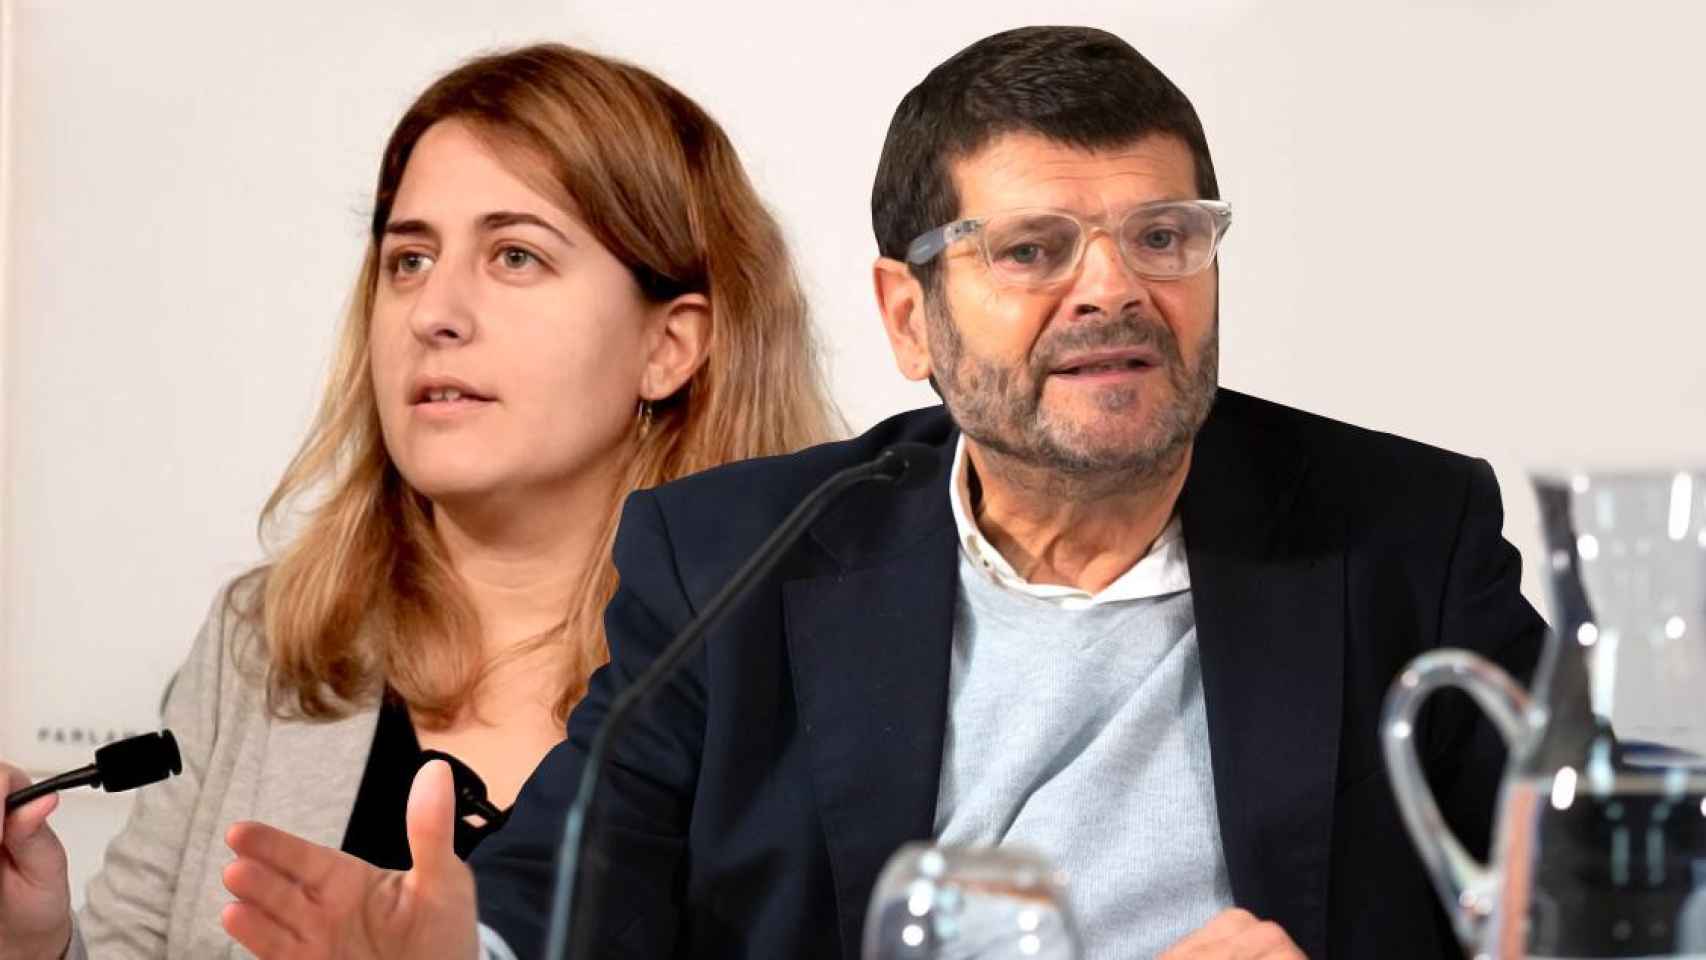 Marta Pascal y Albert Batlle, posibles dirigentes del Partit Nacionalista de Catalunya, una especie de PNV a la catalana, entre las noticias del día / CG